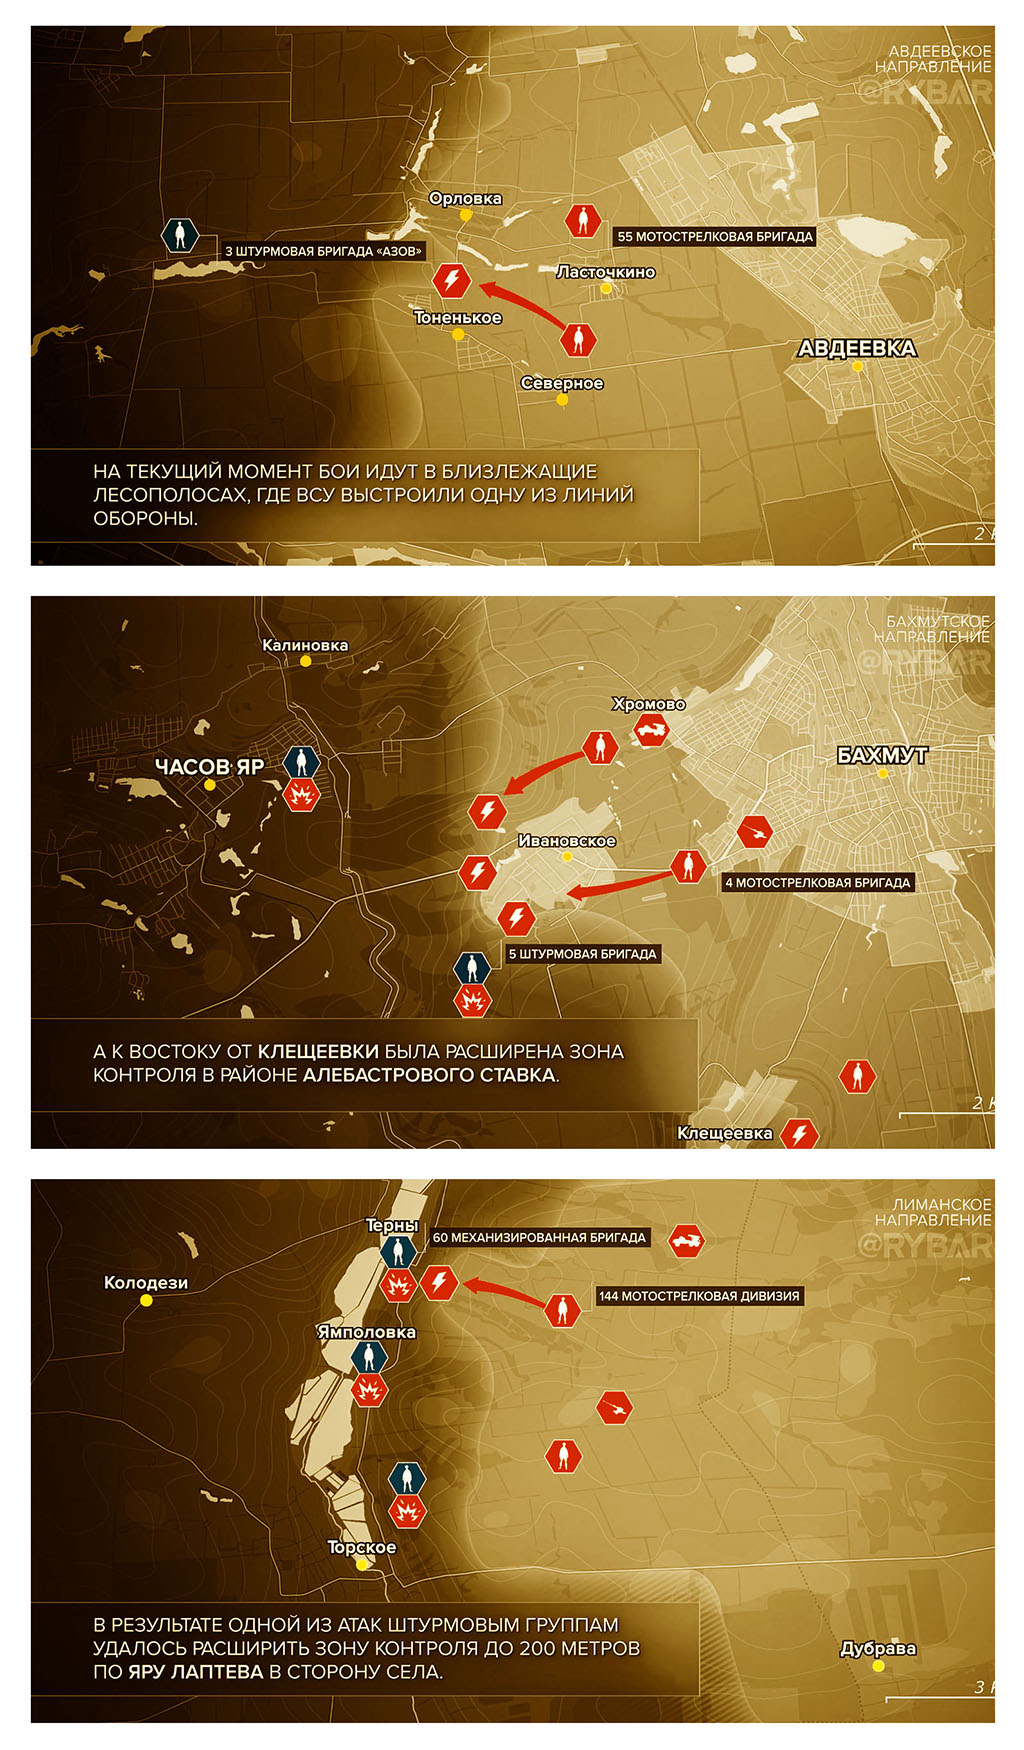 Карта боевых действий на Украине, Ситуация по направлениям, на 27.03.24 г. Карта СВО от «Рыбарь».